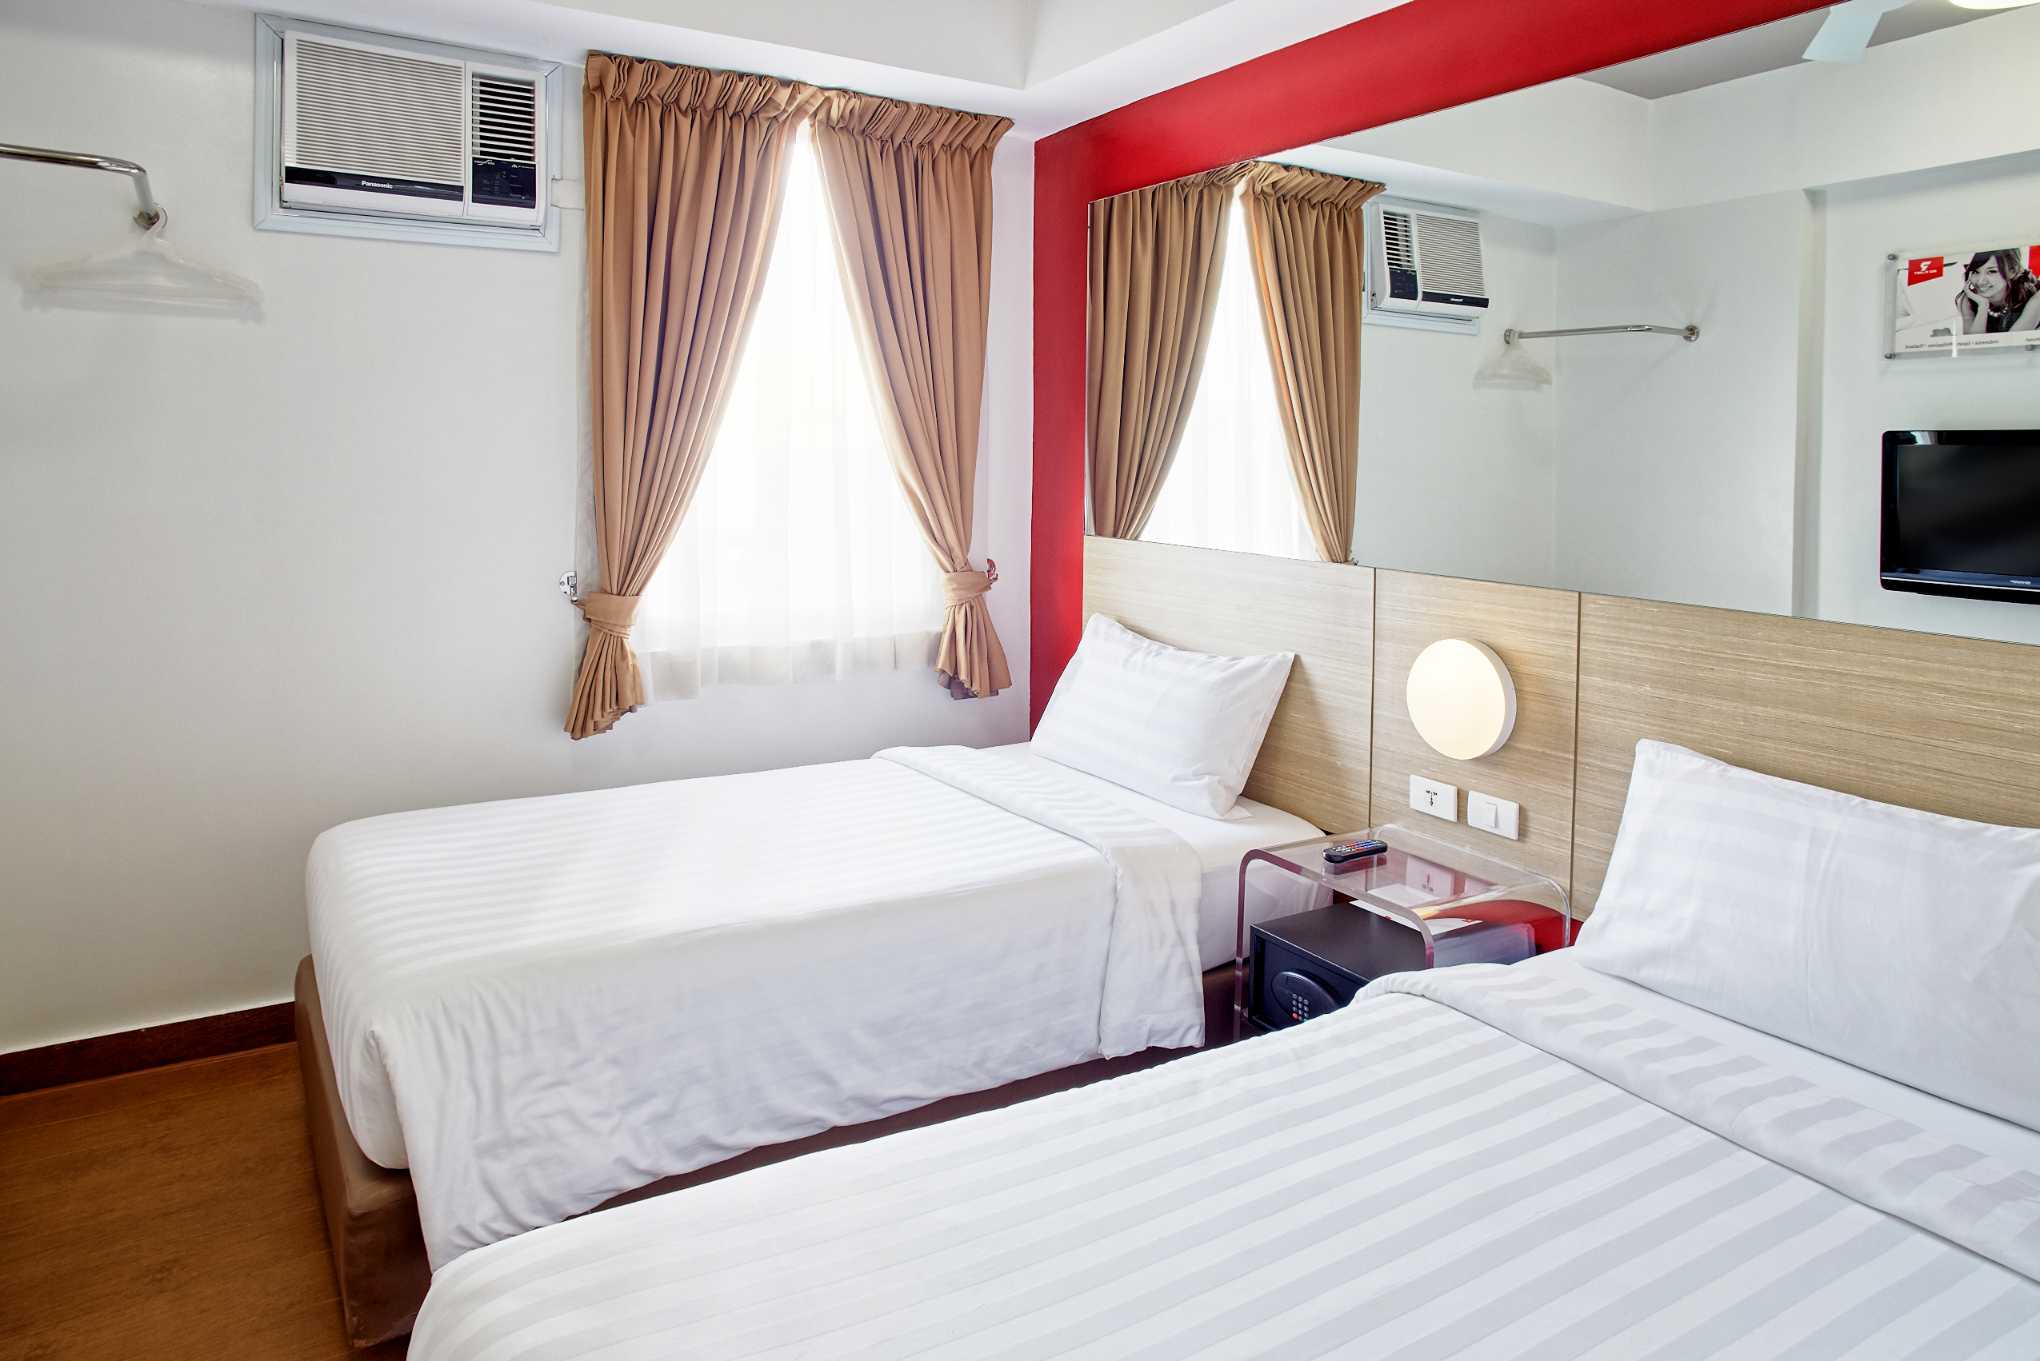 standard bedroom 3 - hotel red planet cagayan de oro - cagayan de oro, philippines